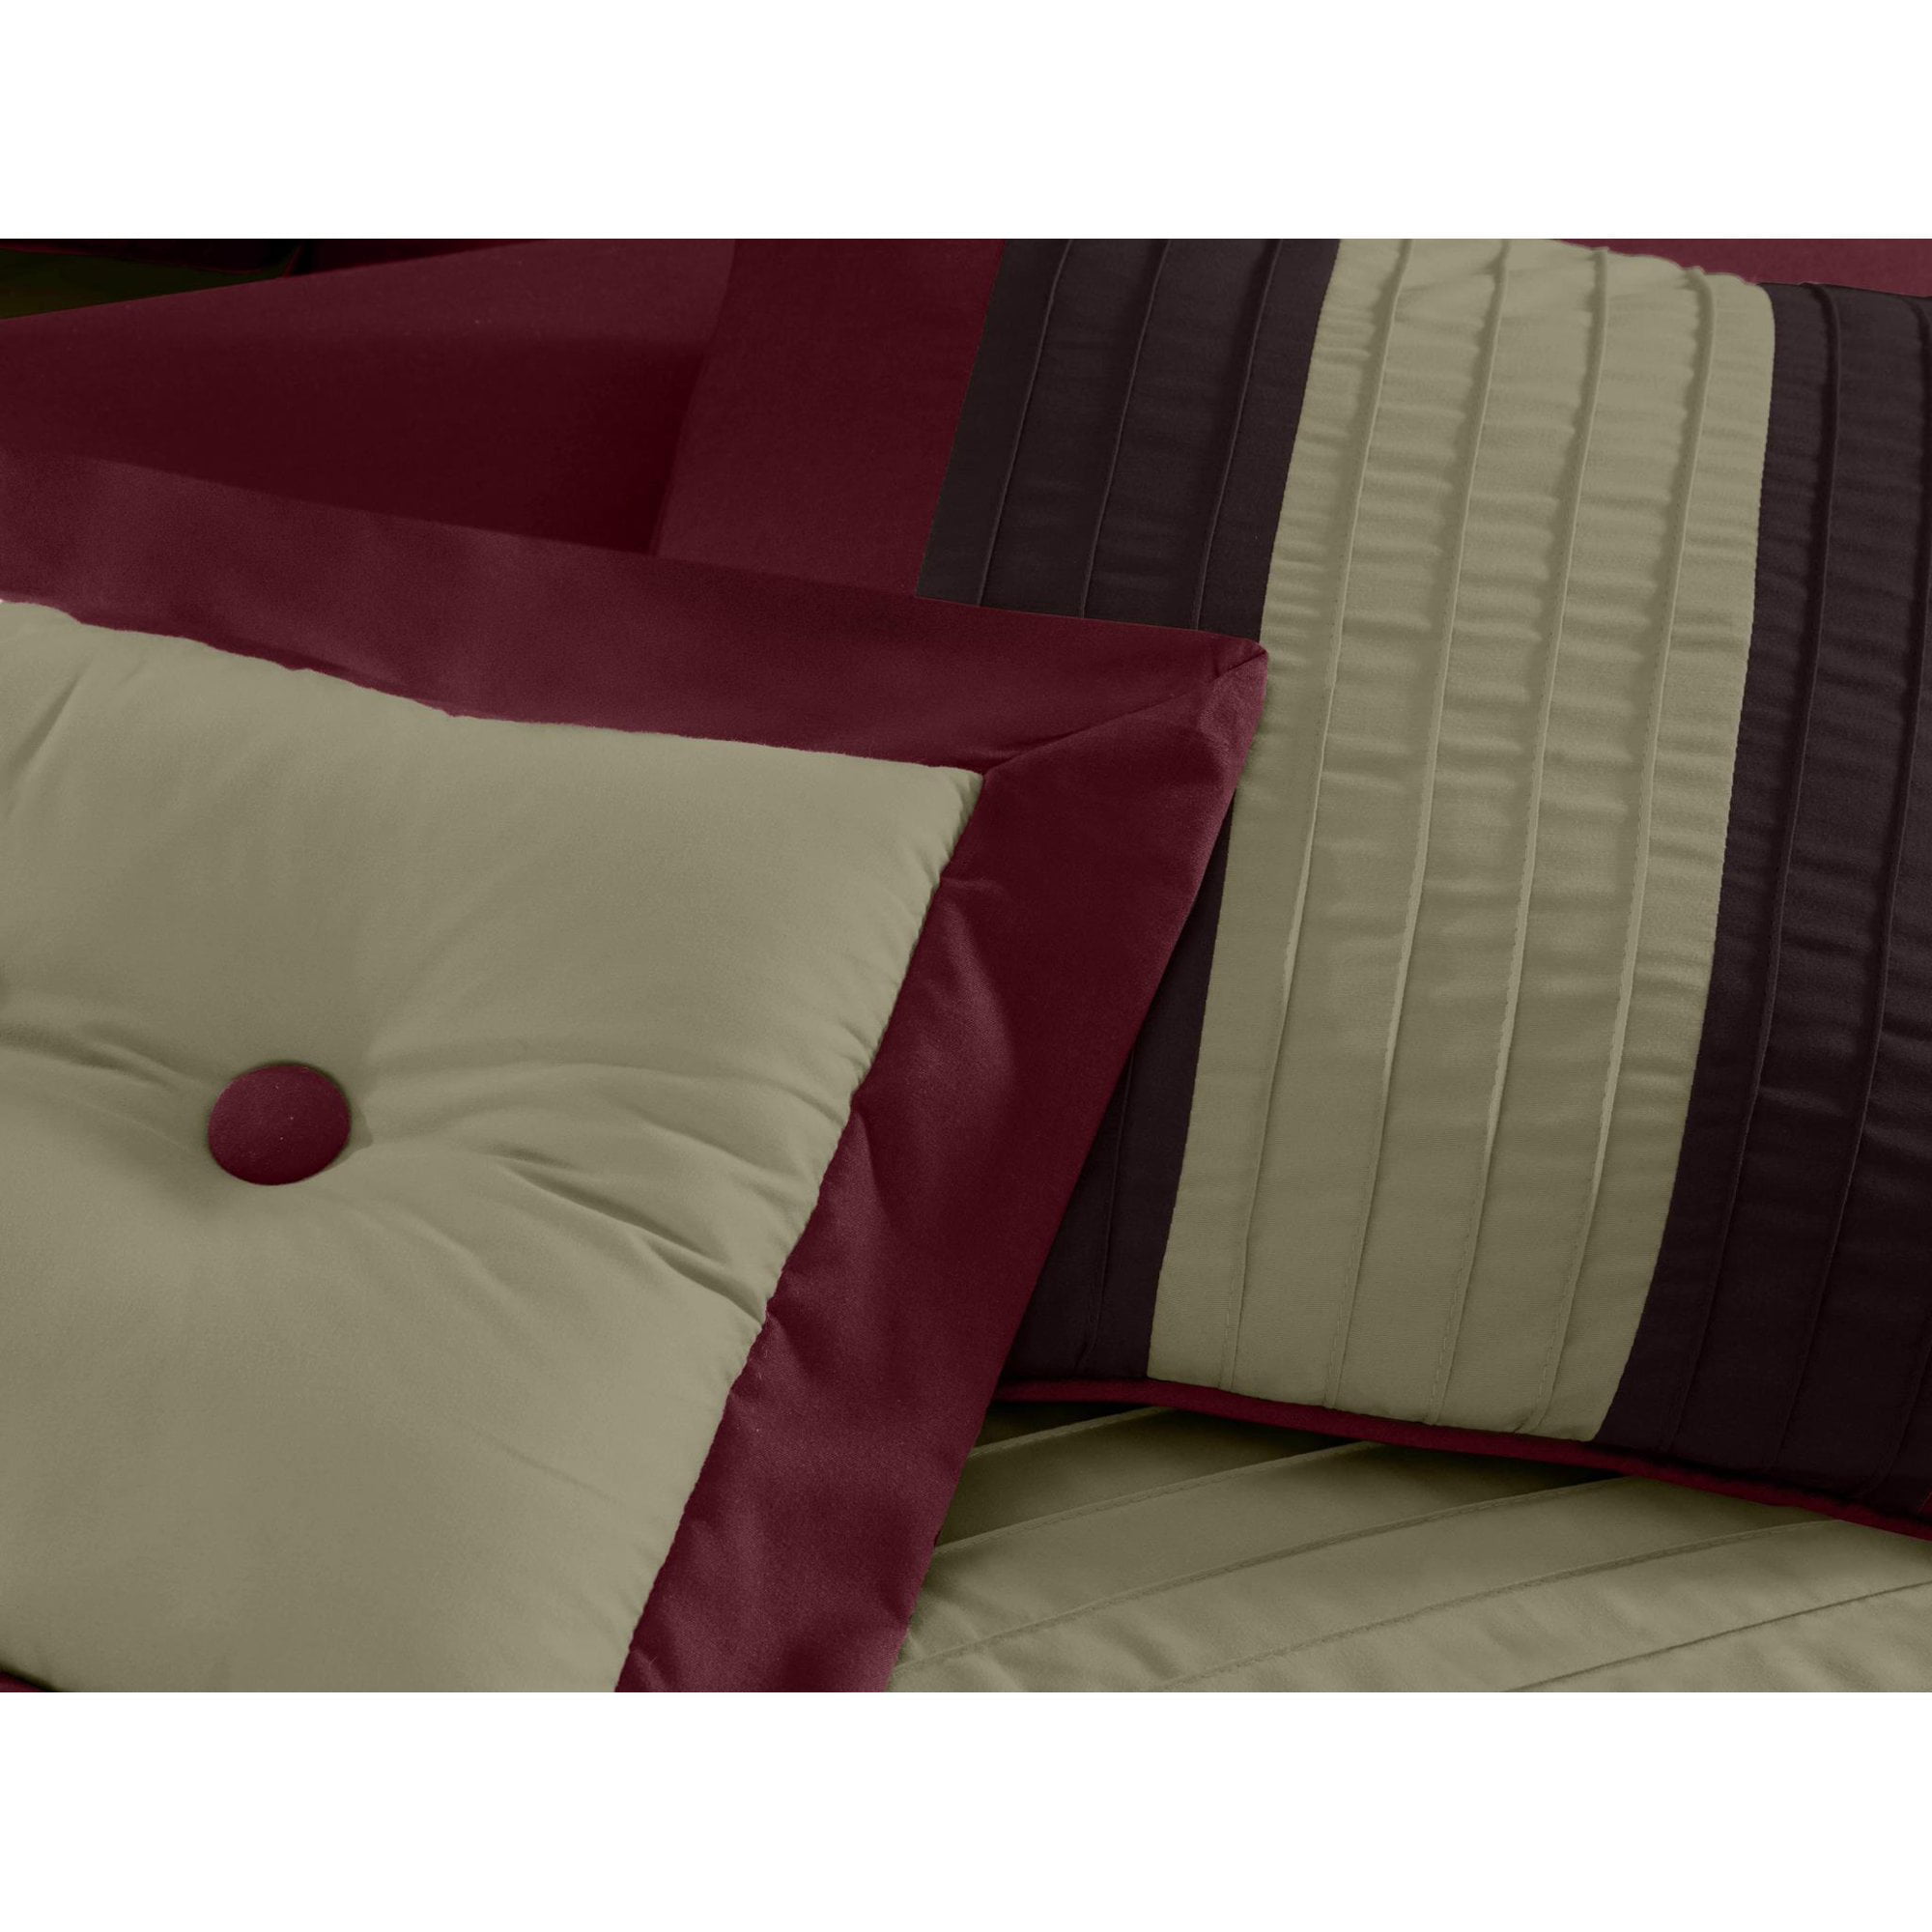  Chezmoi Collection Loft 8-Piece Luxury Striped Comforter Set ( Queen, Burgundy/Coffee/Brown) : Home & Kitchen